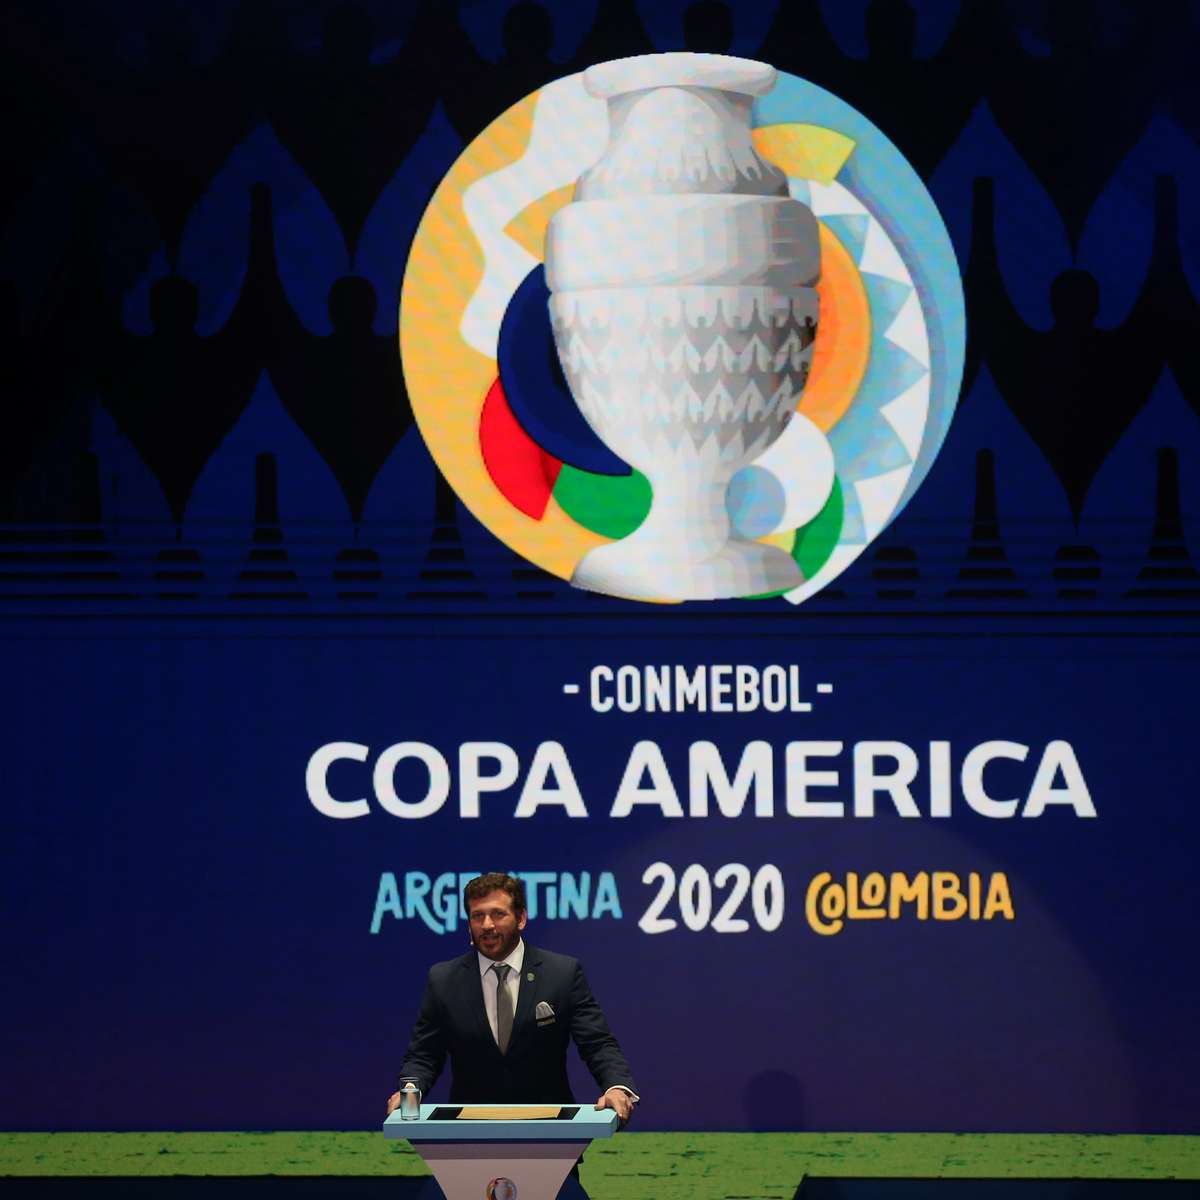 Grupos da Copa América 2024 são sorteados: Veja adversários do